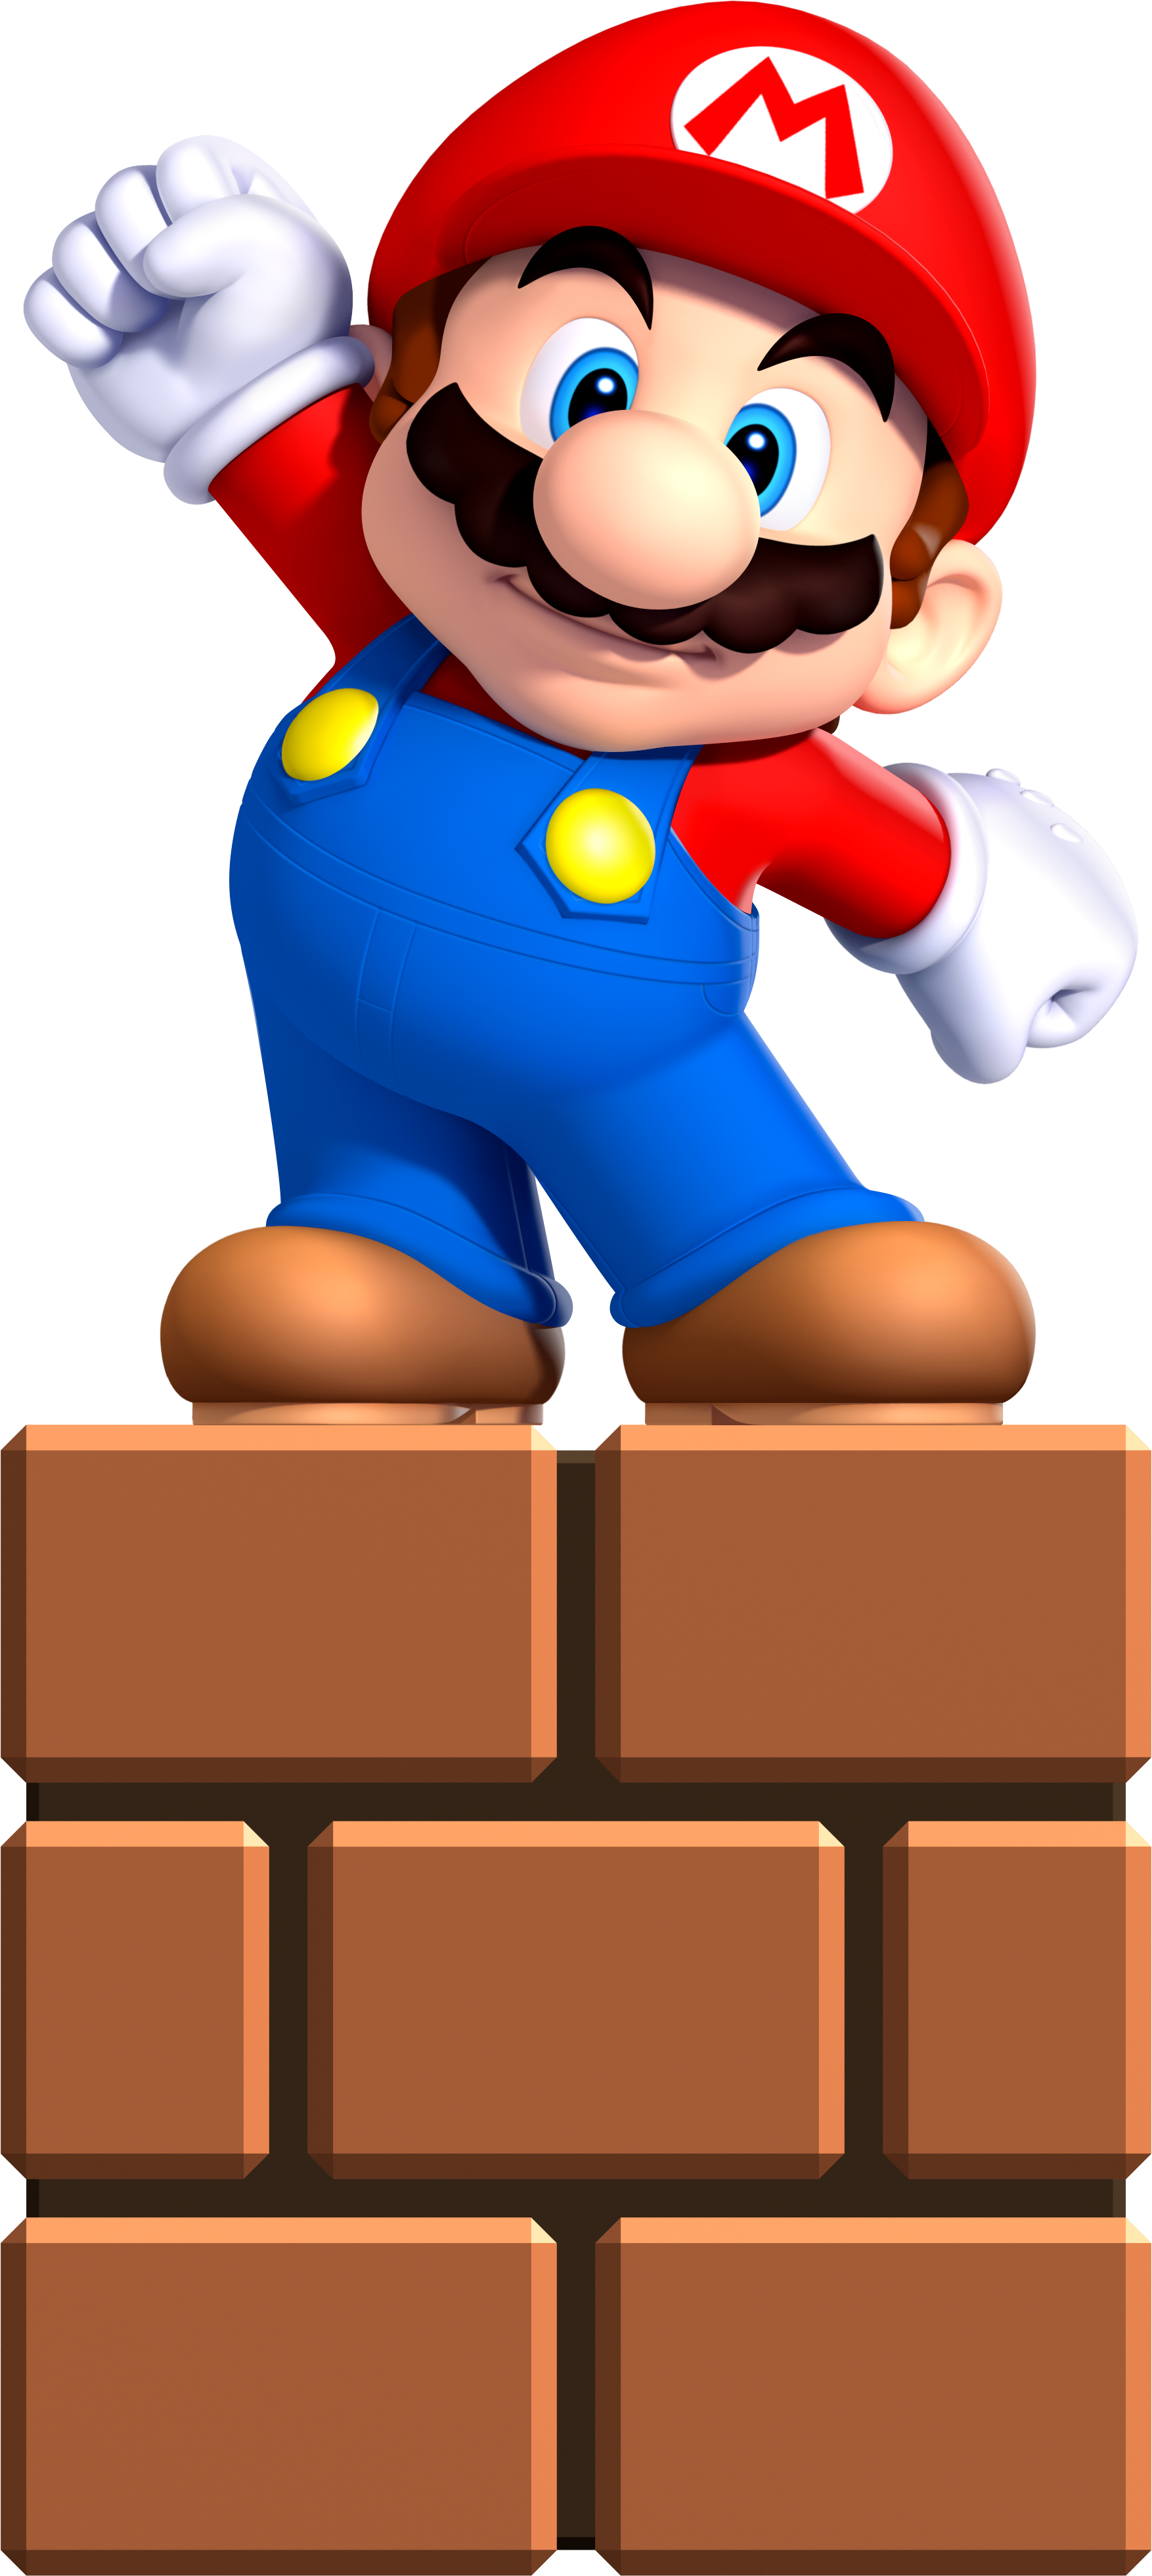 Small Mario PNG Image